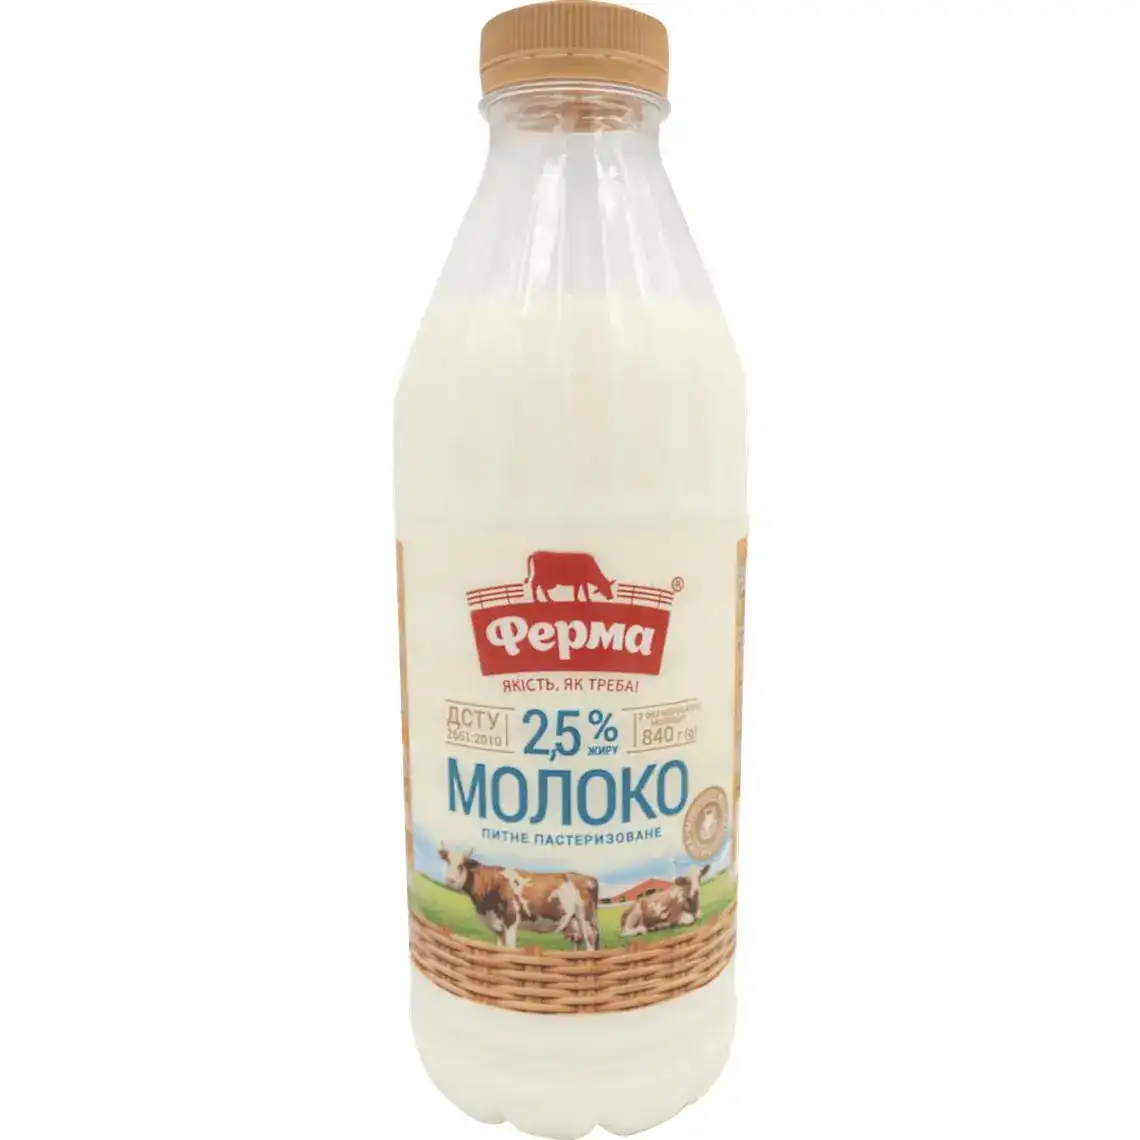 Молоко Ферма 2.5% пастеризованное 840 г